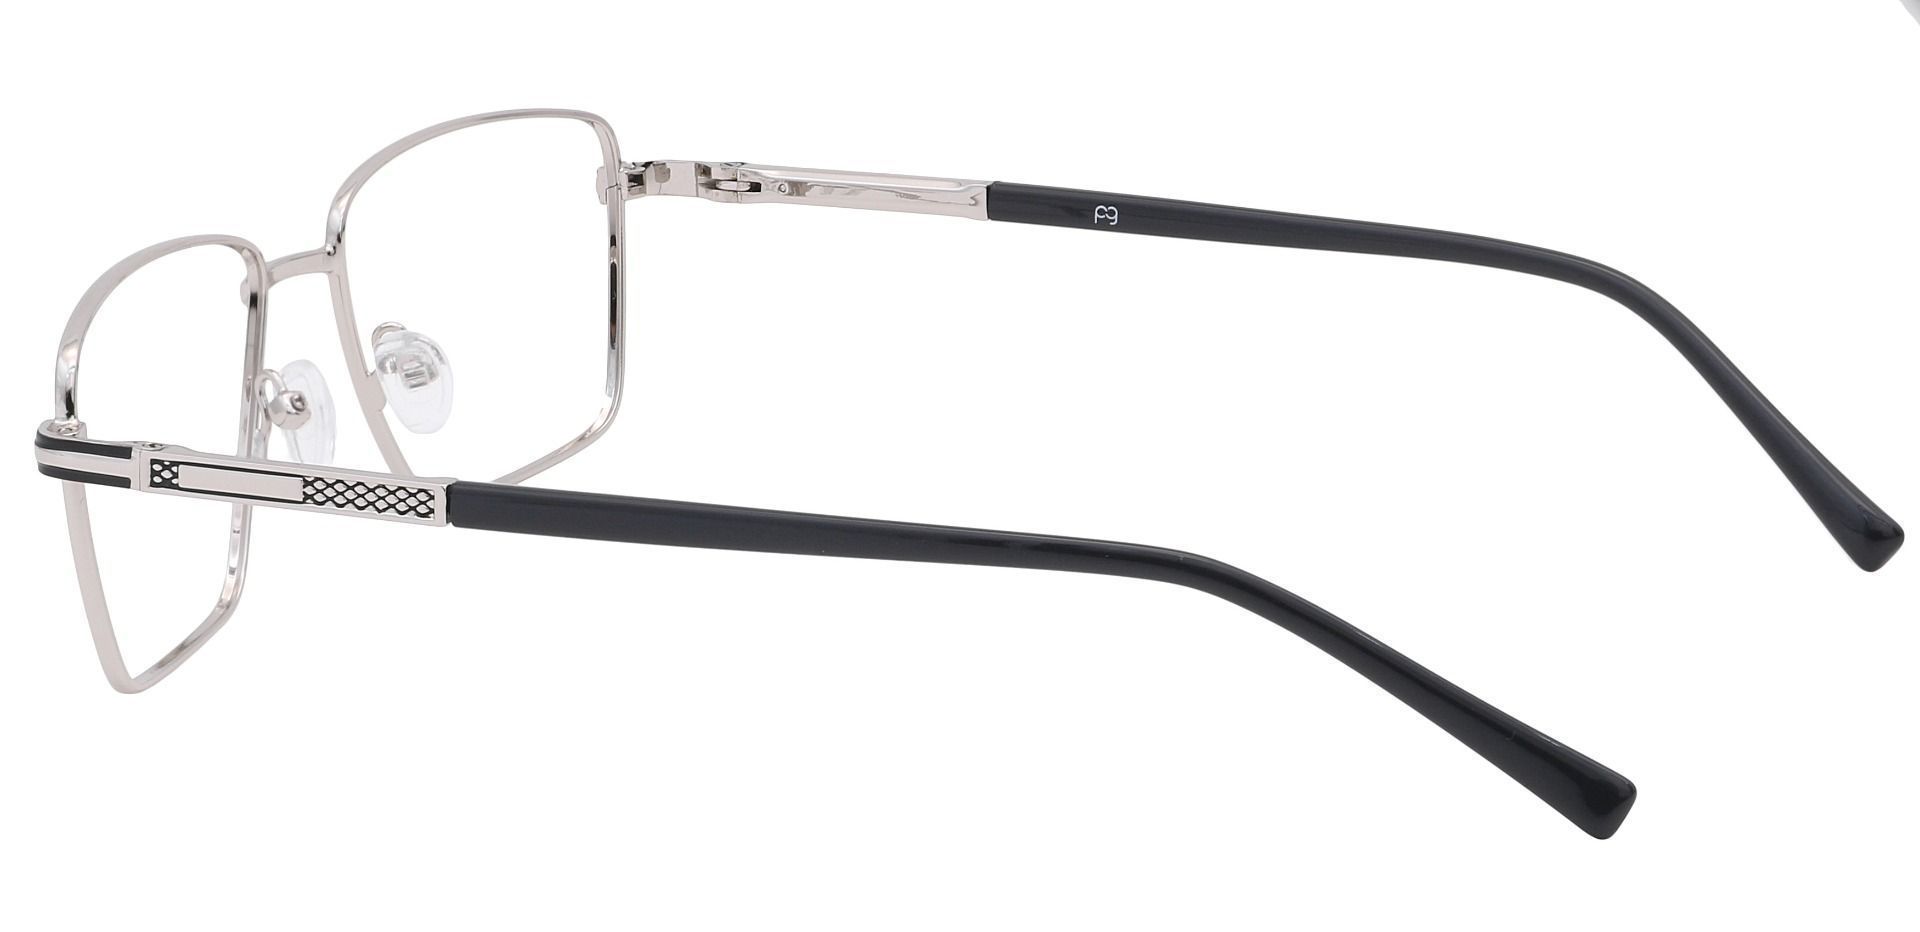 Daniel Rectangle Non-Rx Glasses - Silver